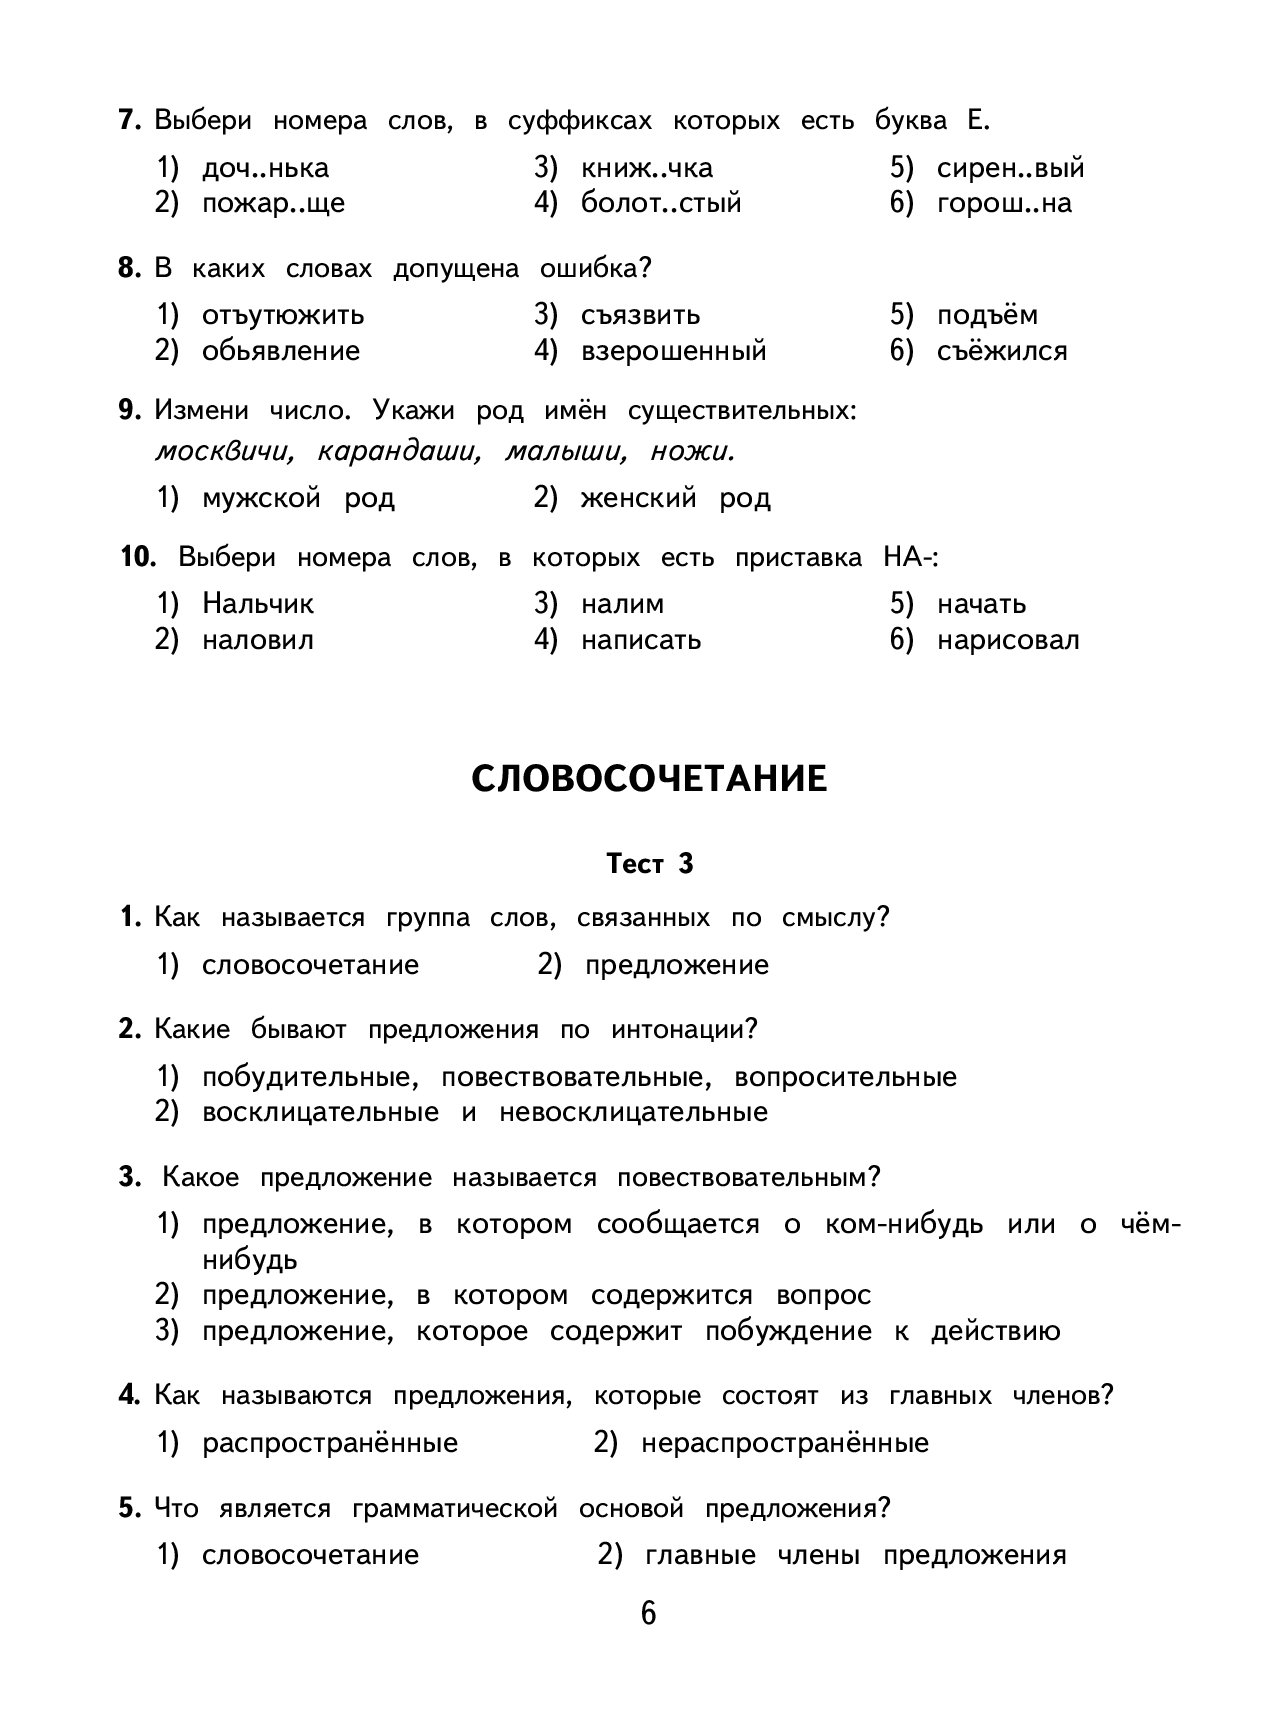 Книга 2500 тестовых Заданий по Русскому Языку, 4 класс все темы, все  Варианты Заданий - купить в ООО 